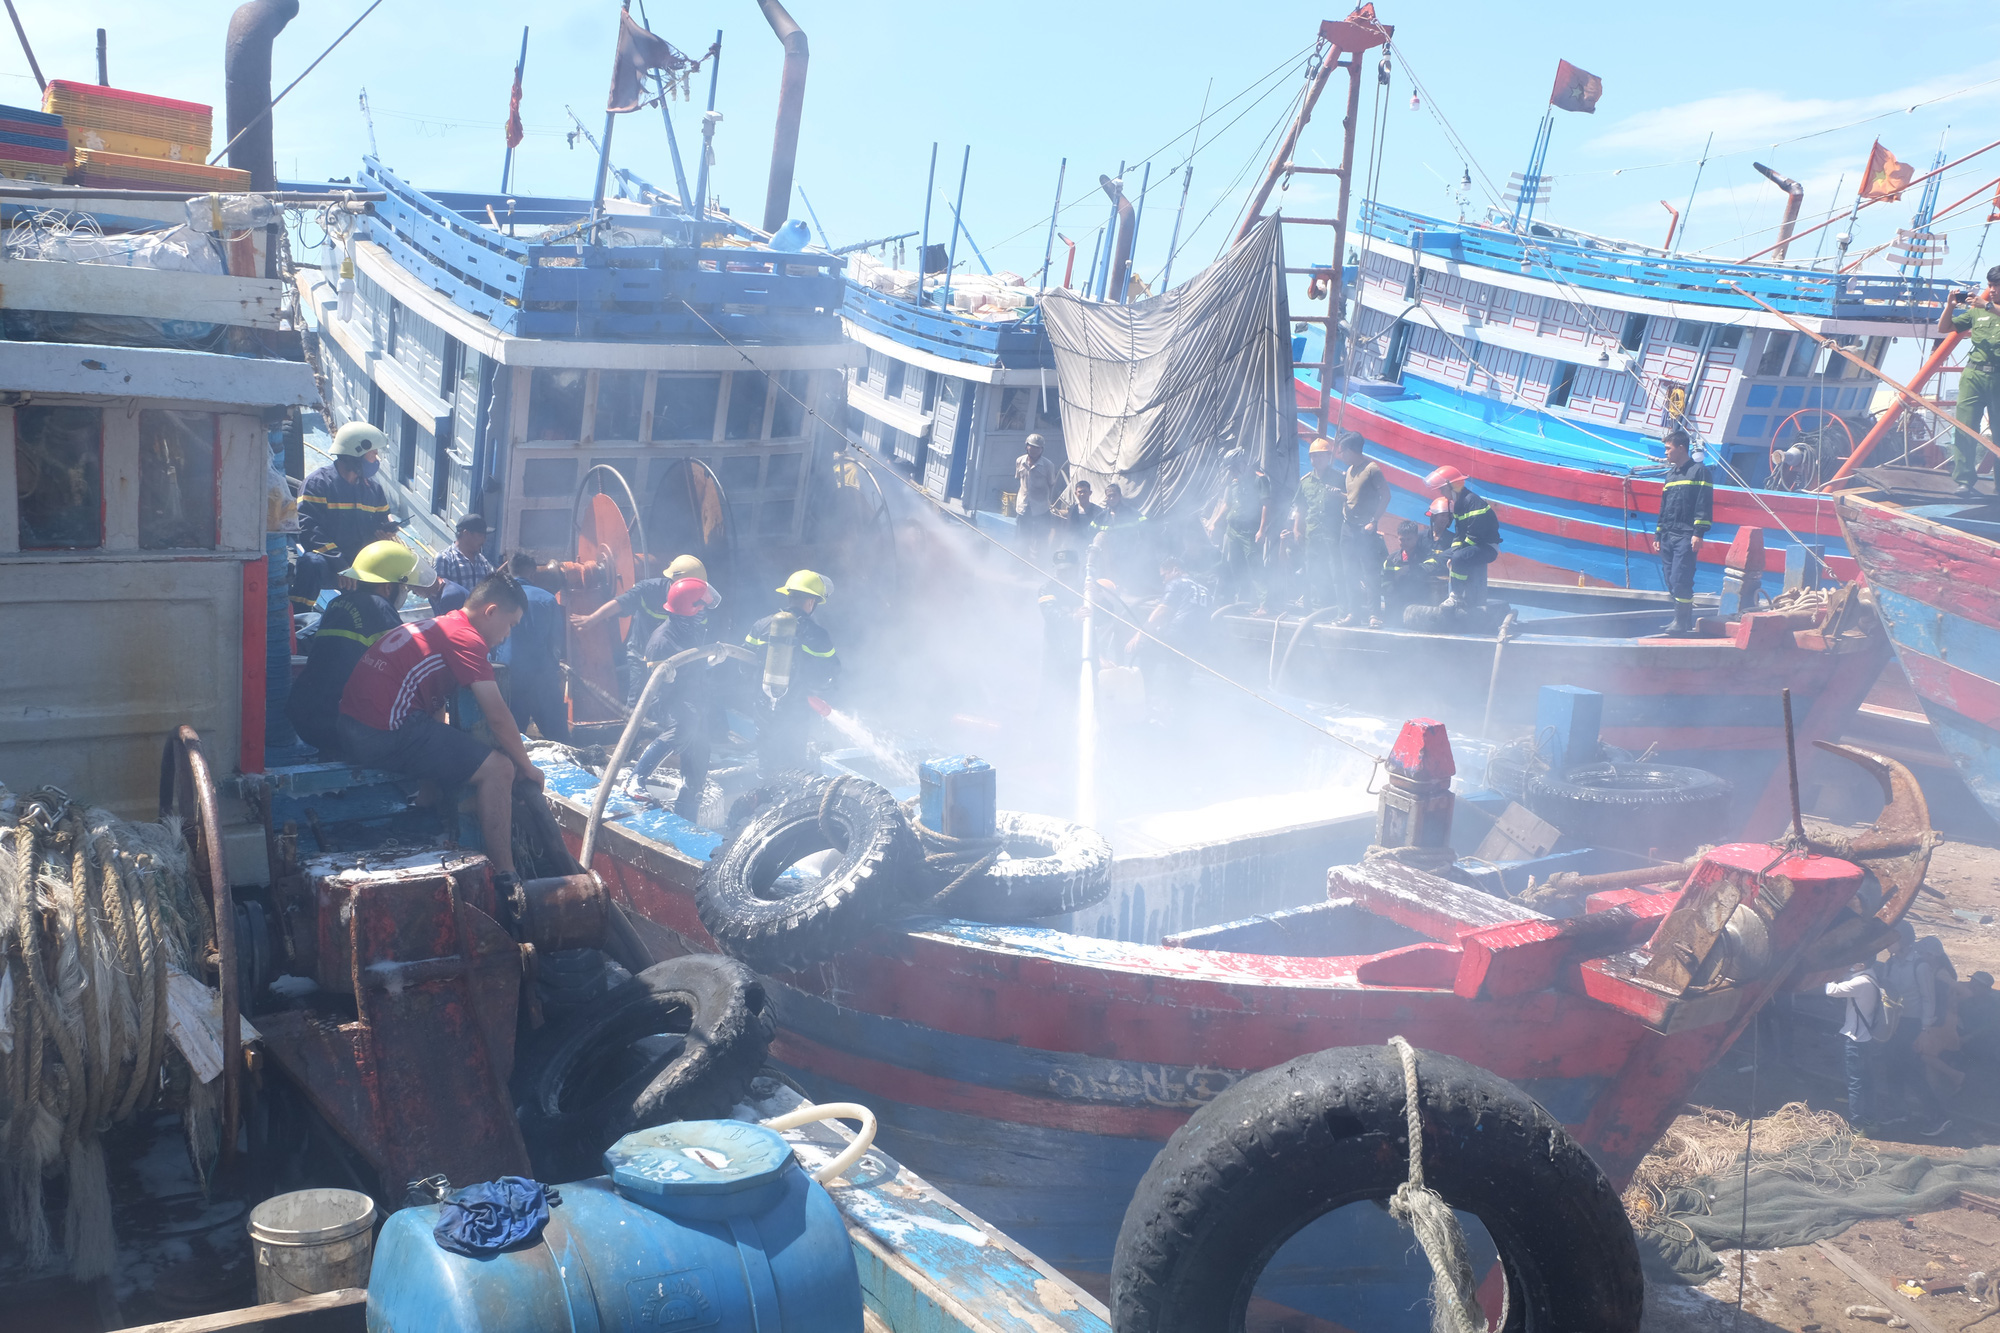 Tàu cá tiền tỷ bốc cháy ngùn ngụt giữa xưởng sửa chữa ở Đà Nẵng - Ảnh 4.